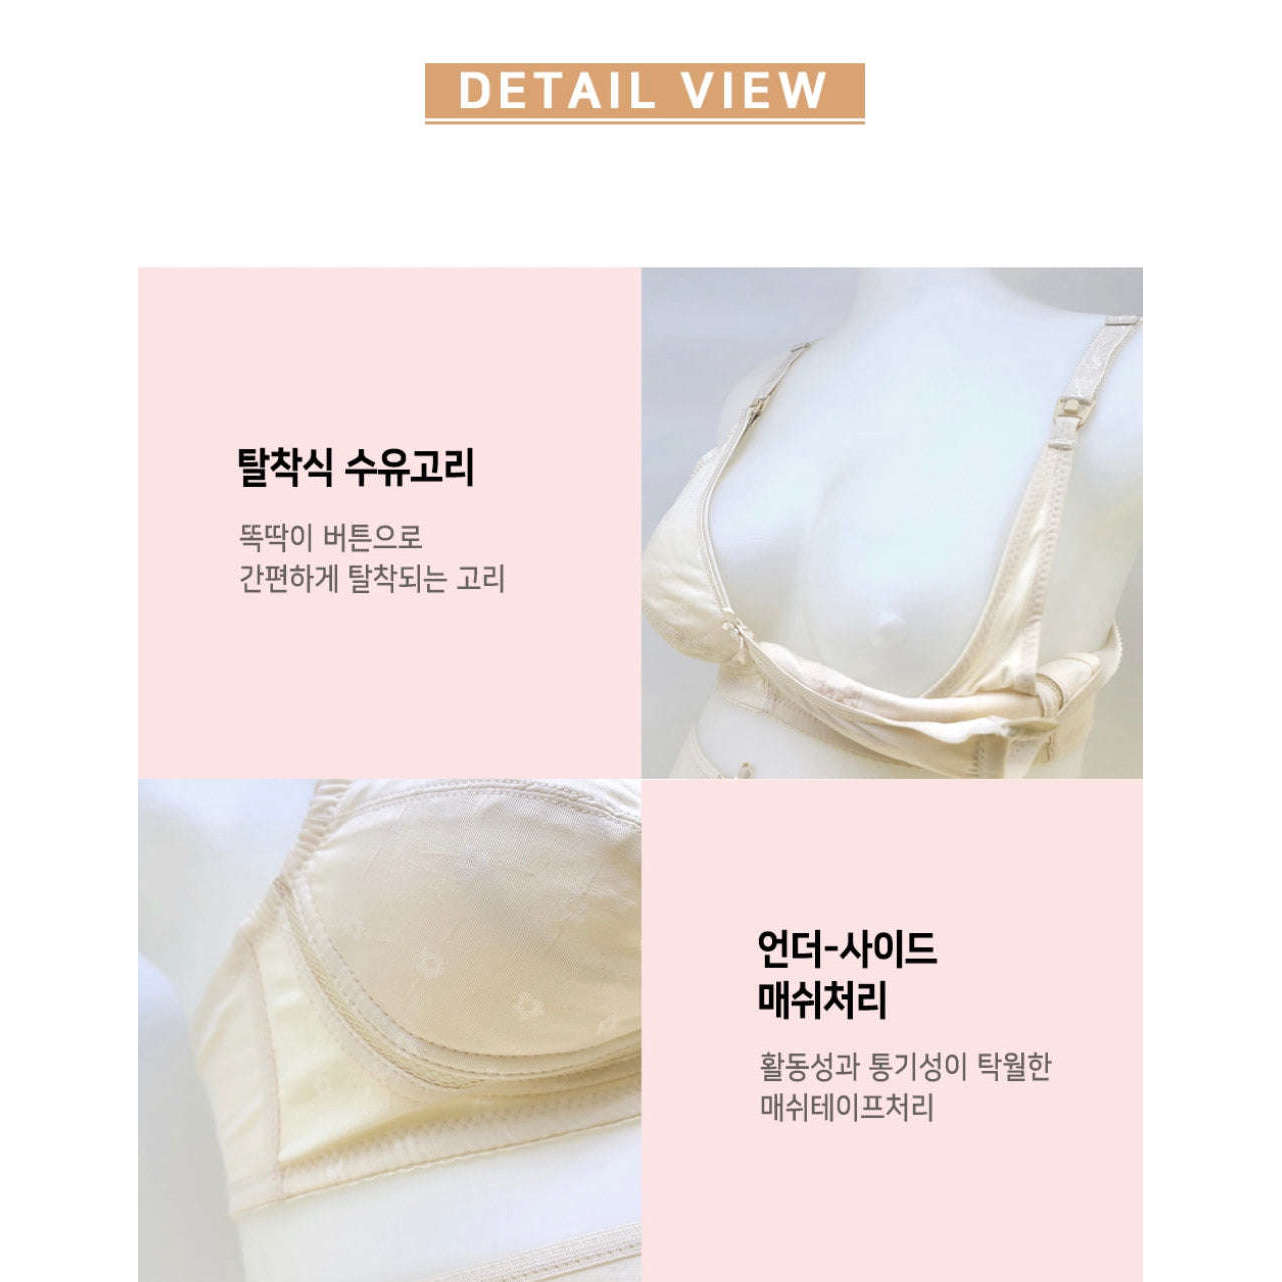 MUMMY.cc:PRAHAUS 韓國製孕婦全罩壓花哺乳胸圍 BR100